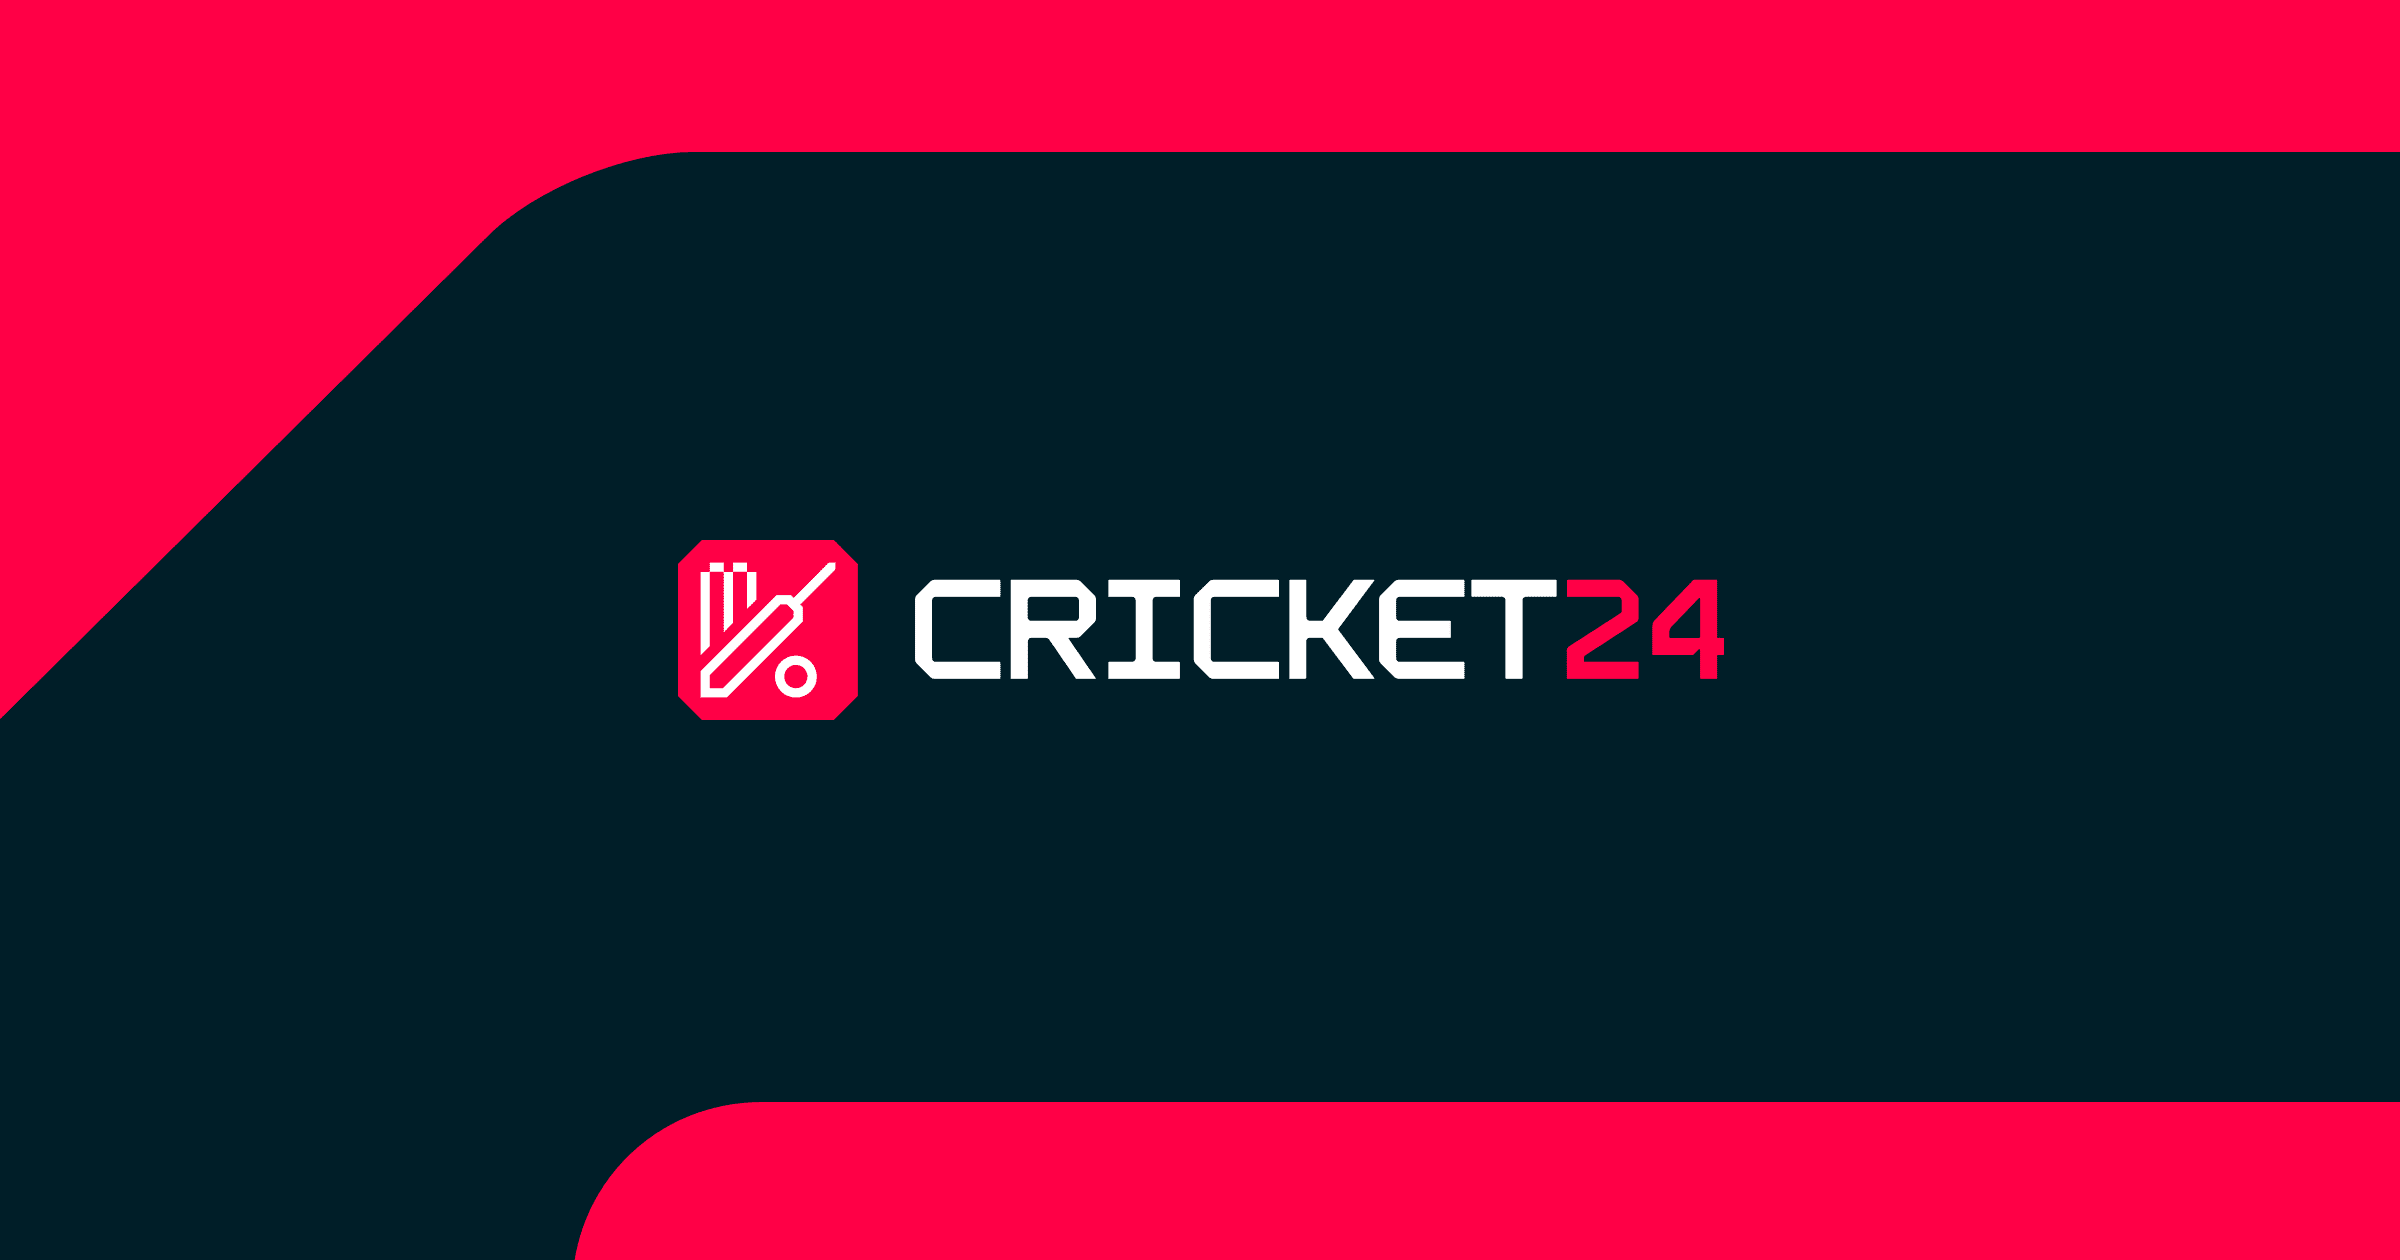 (c) Cricket24.com